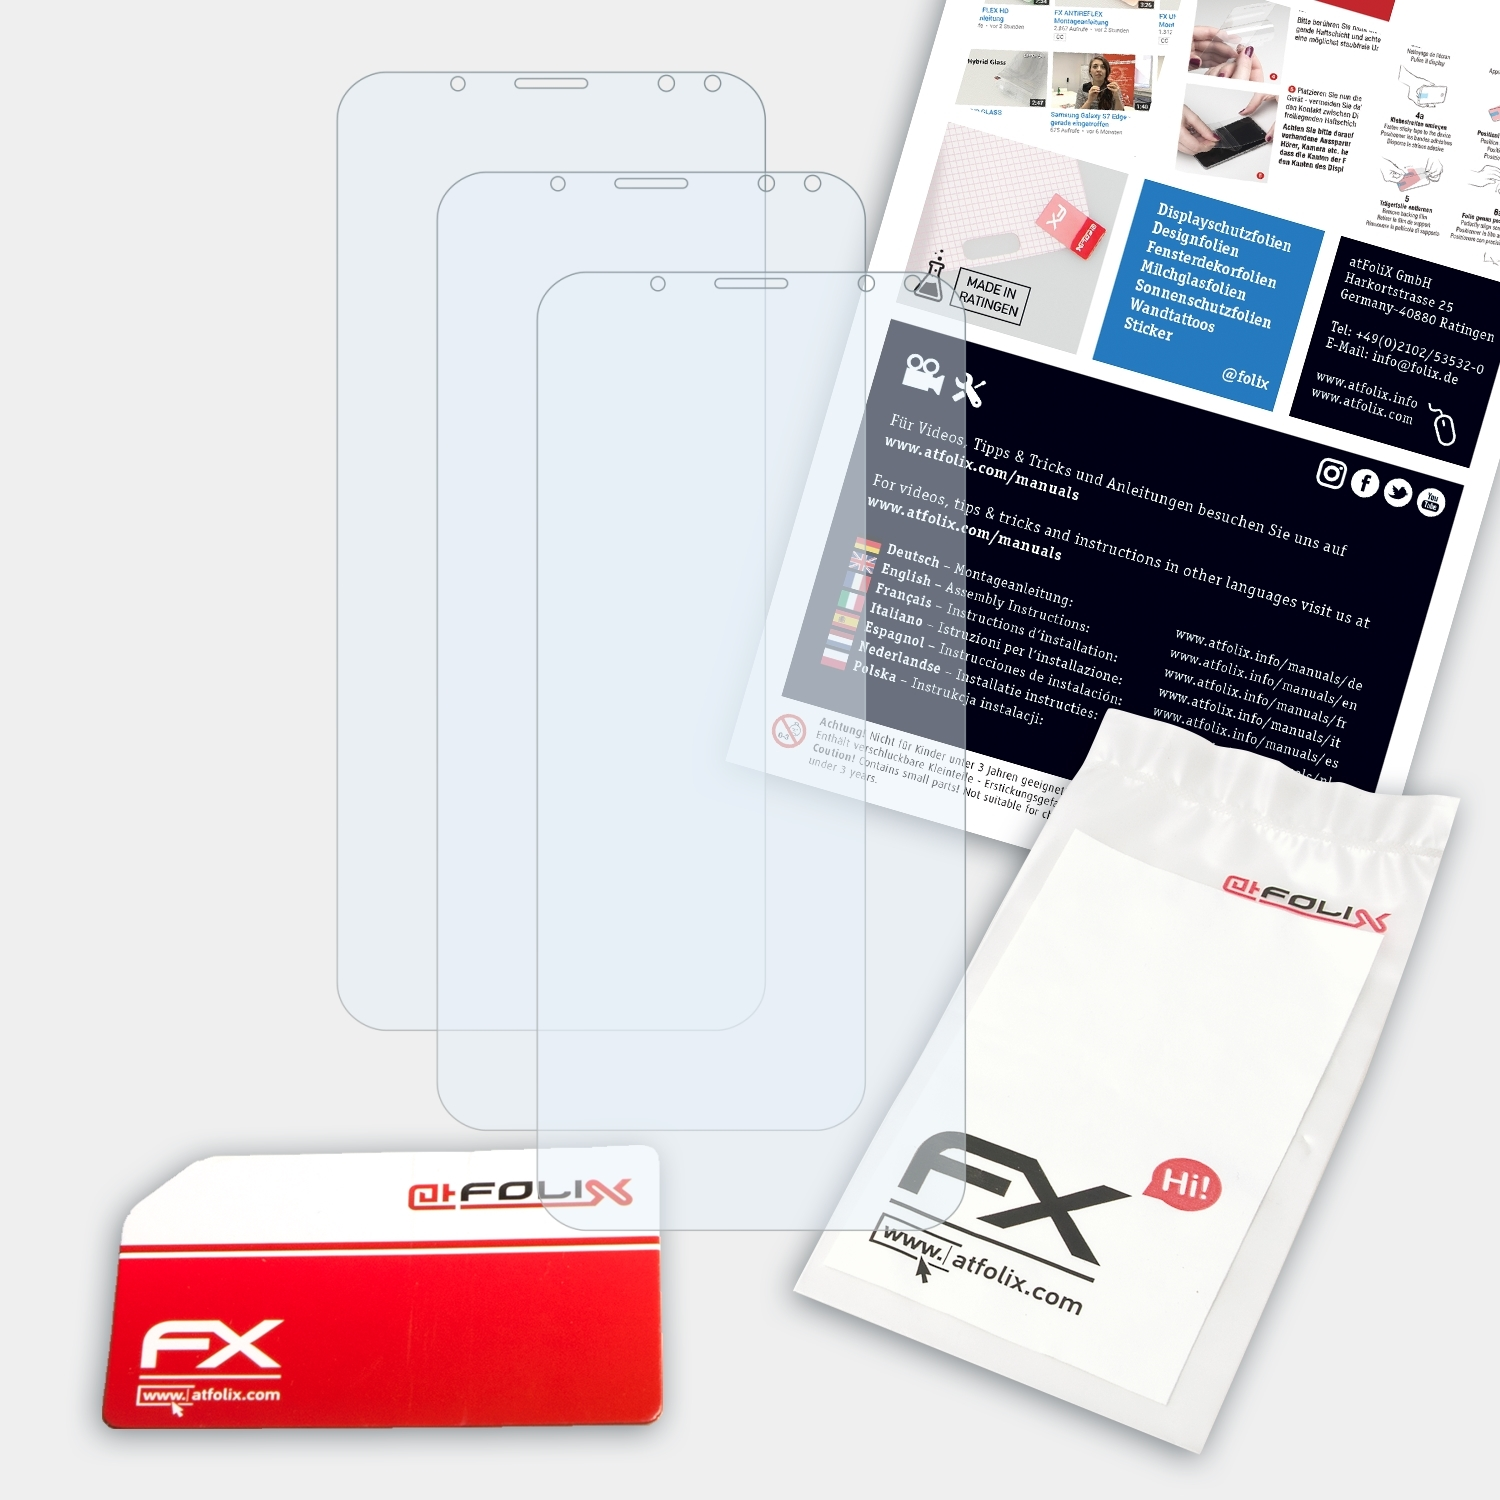 X) ATFOLIX 3x FX-Clear Vernee Displayschutz(für